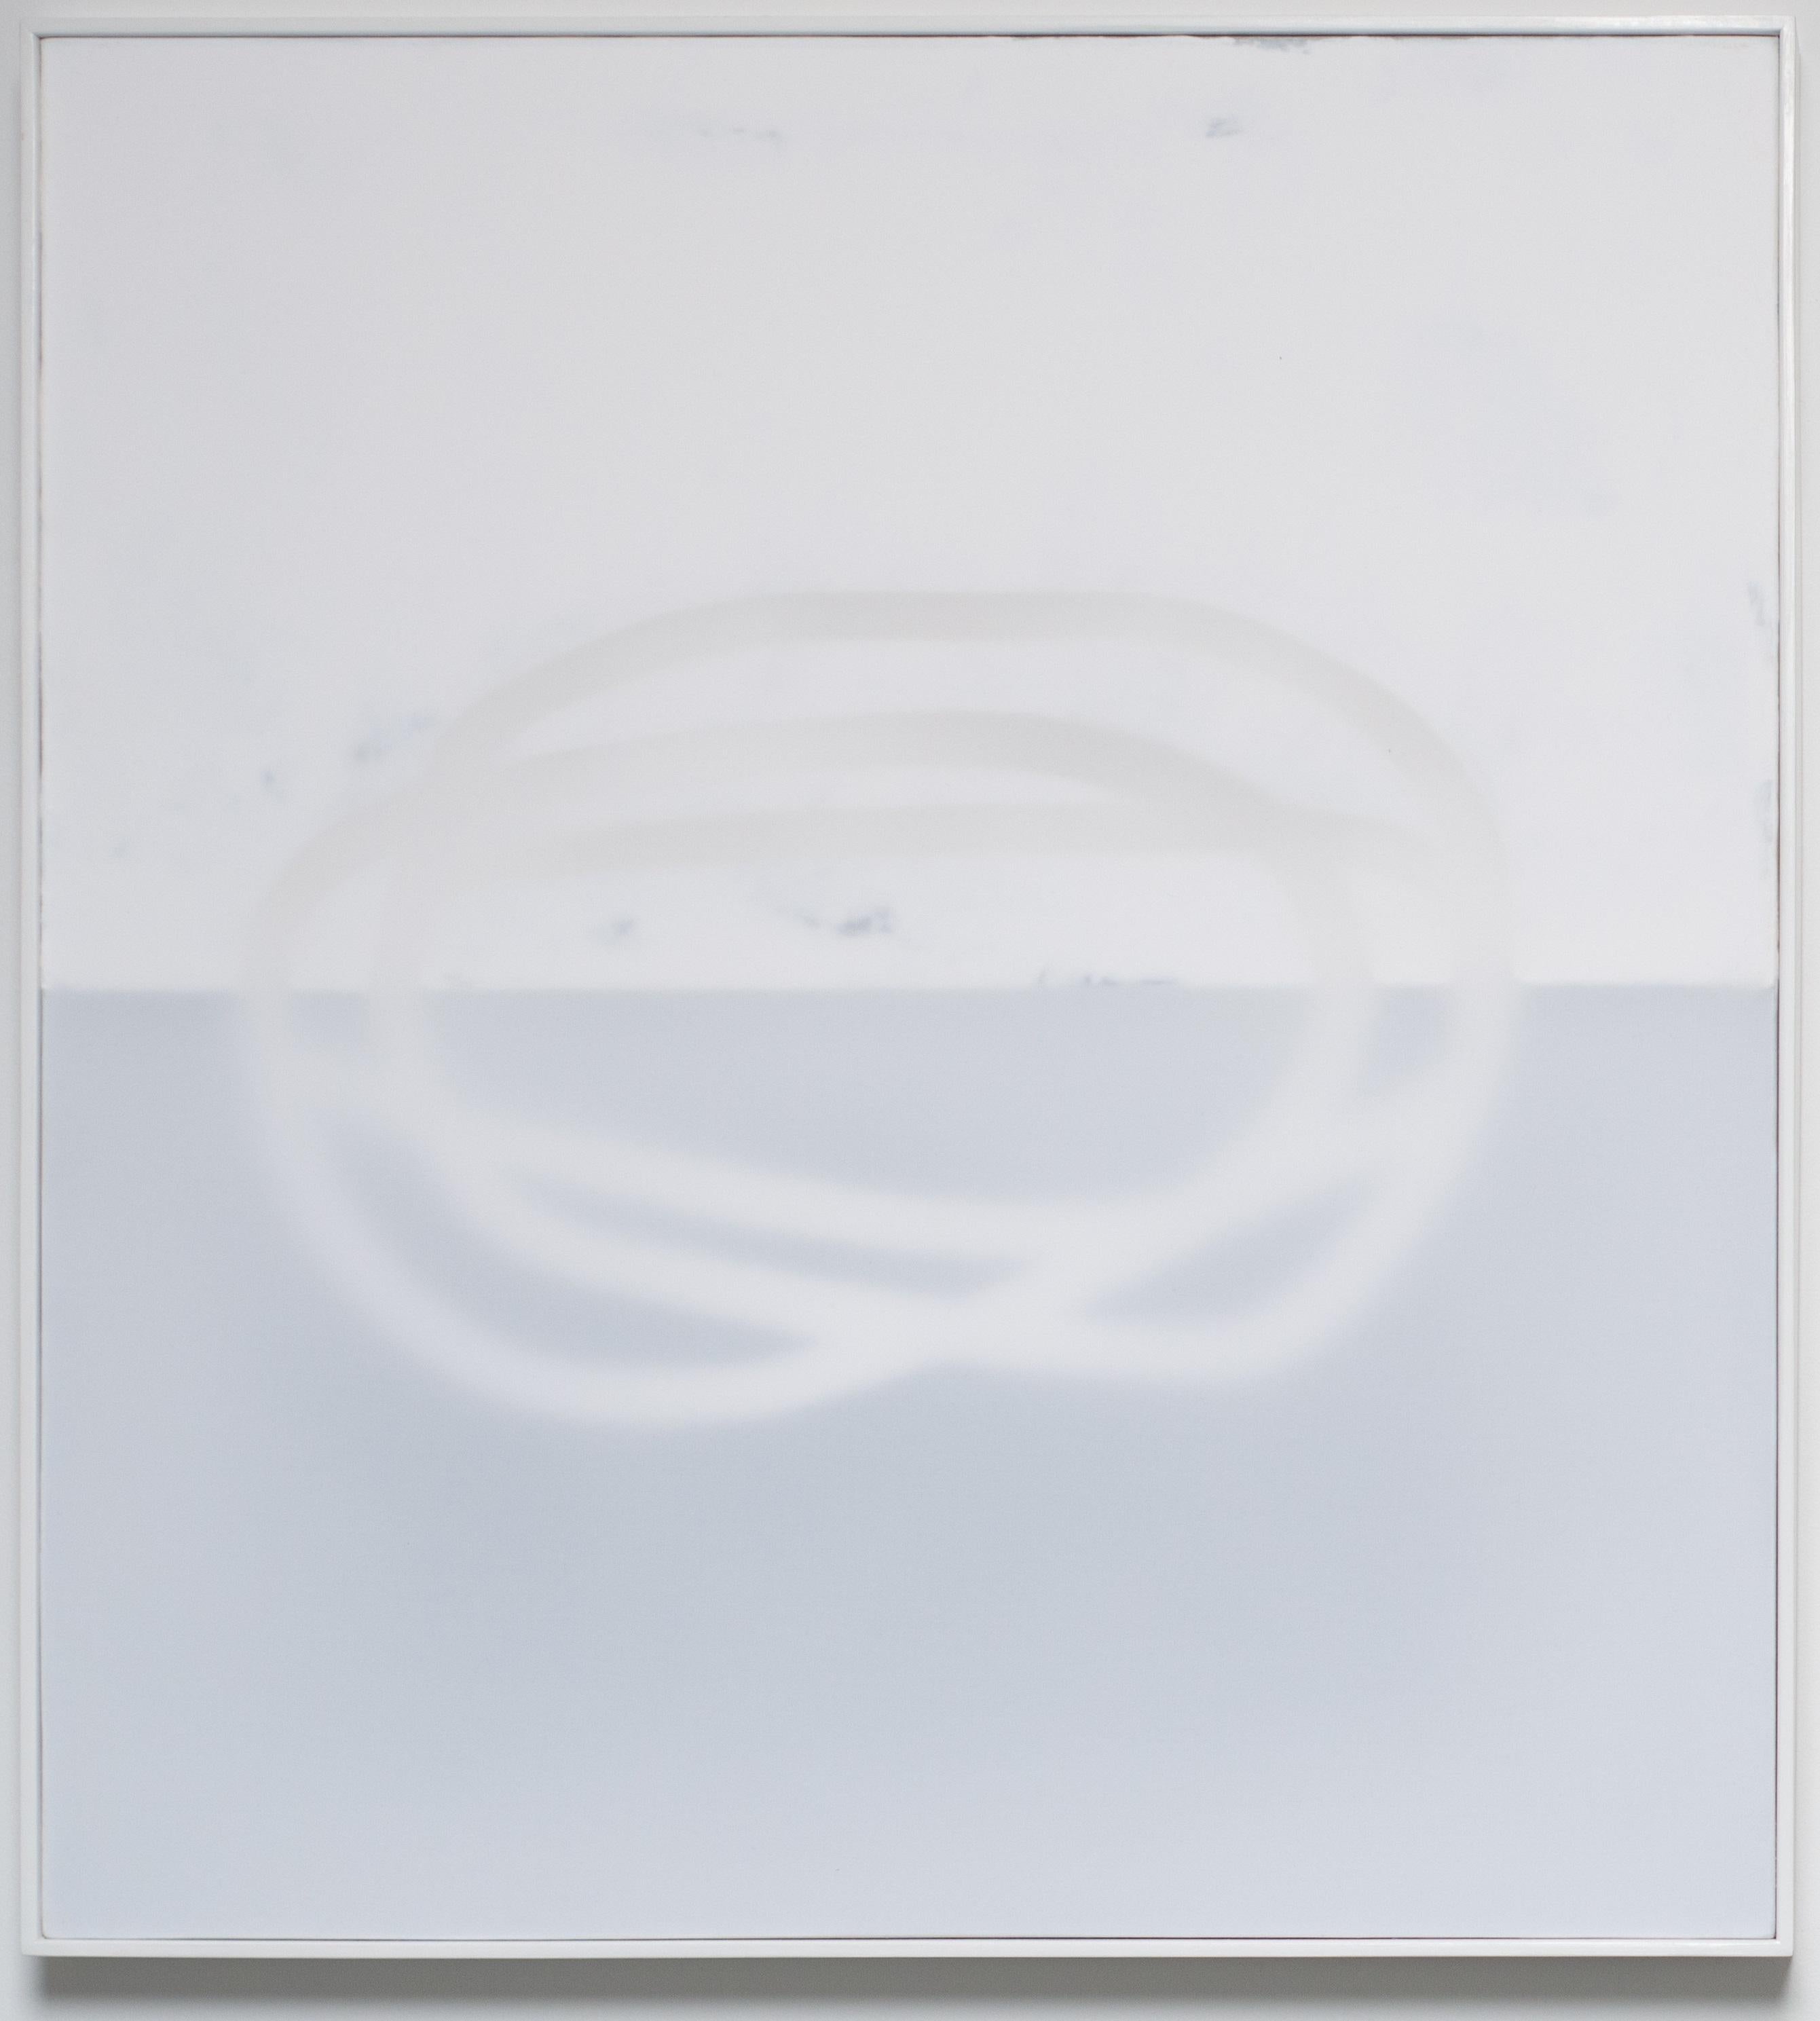 Peinture abstraite sur toile, blanc sur blanc, petite, minimaliste - Mixed Media Art de Udo Noger